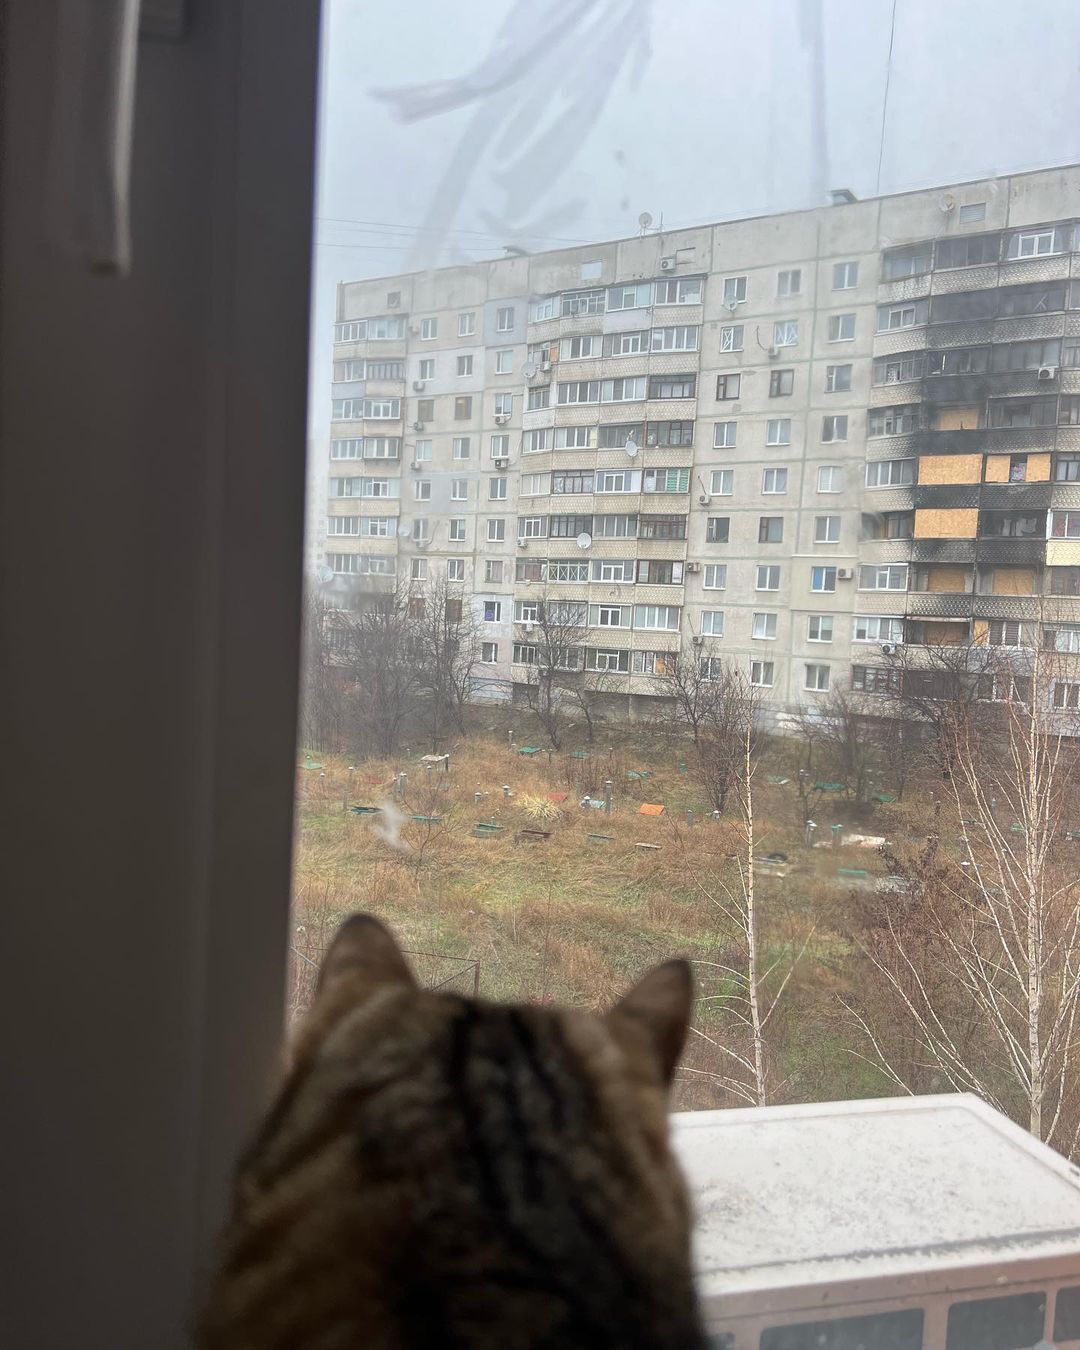 Кіт-блогер Степан, який збирав у Європі гроші для України, повернувся додому до Харкова. Фото